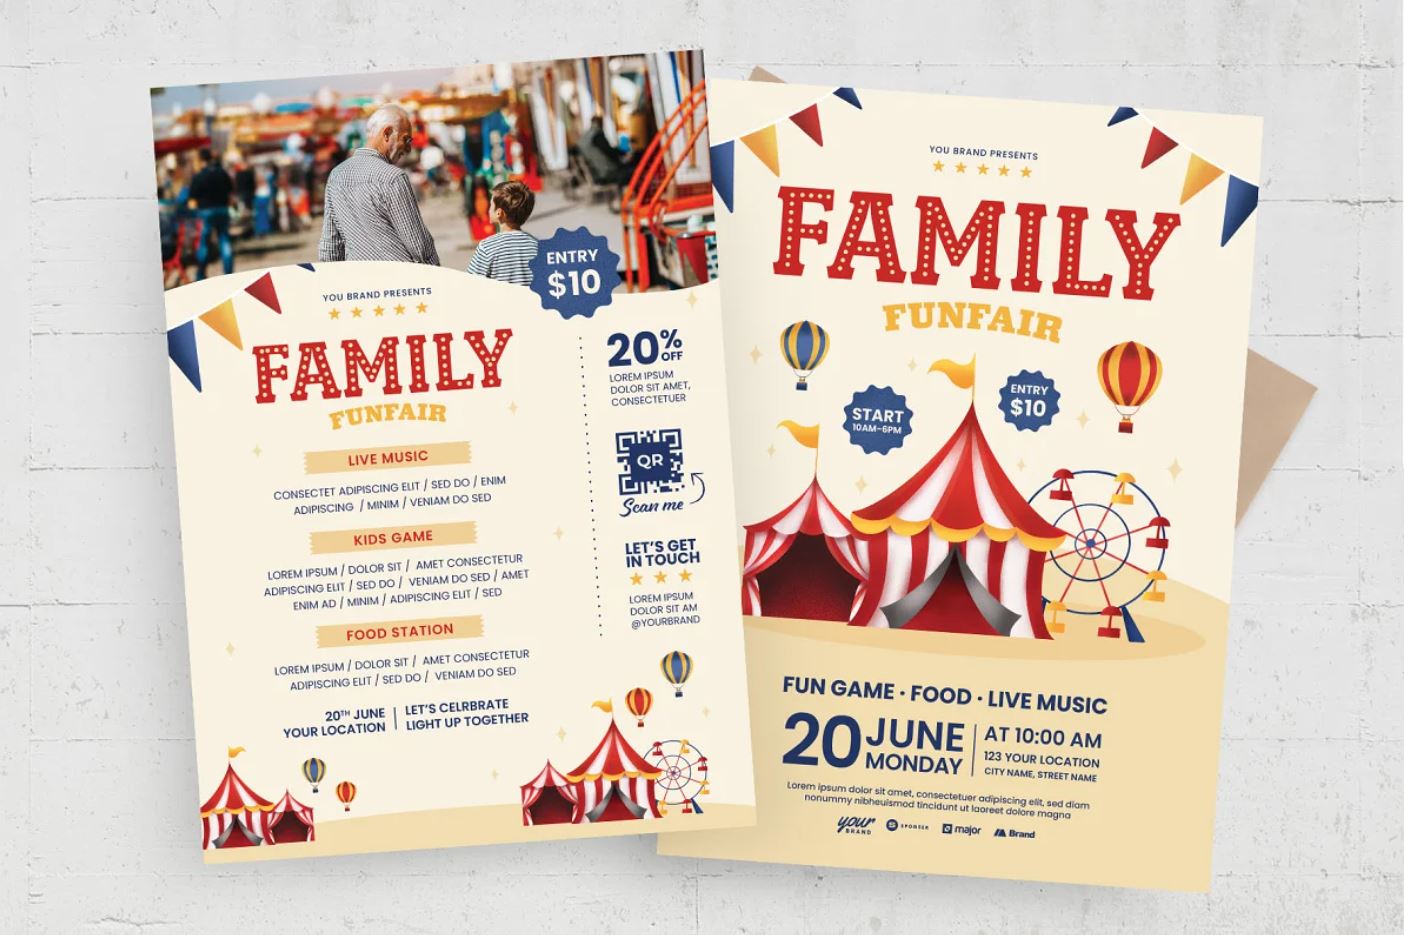 Printable Family Fun Fair Flyer Design Download